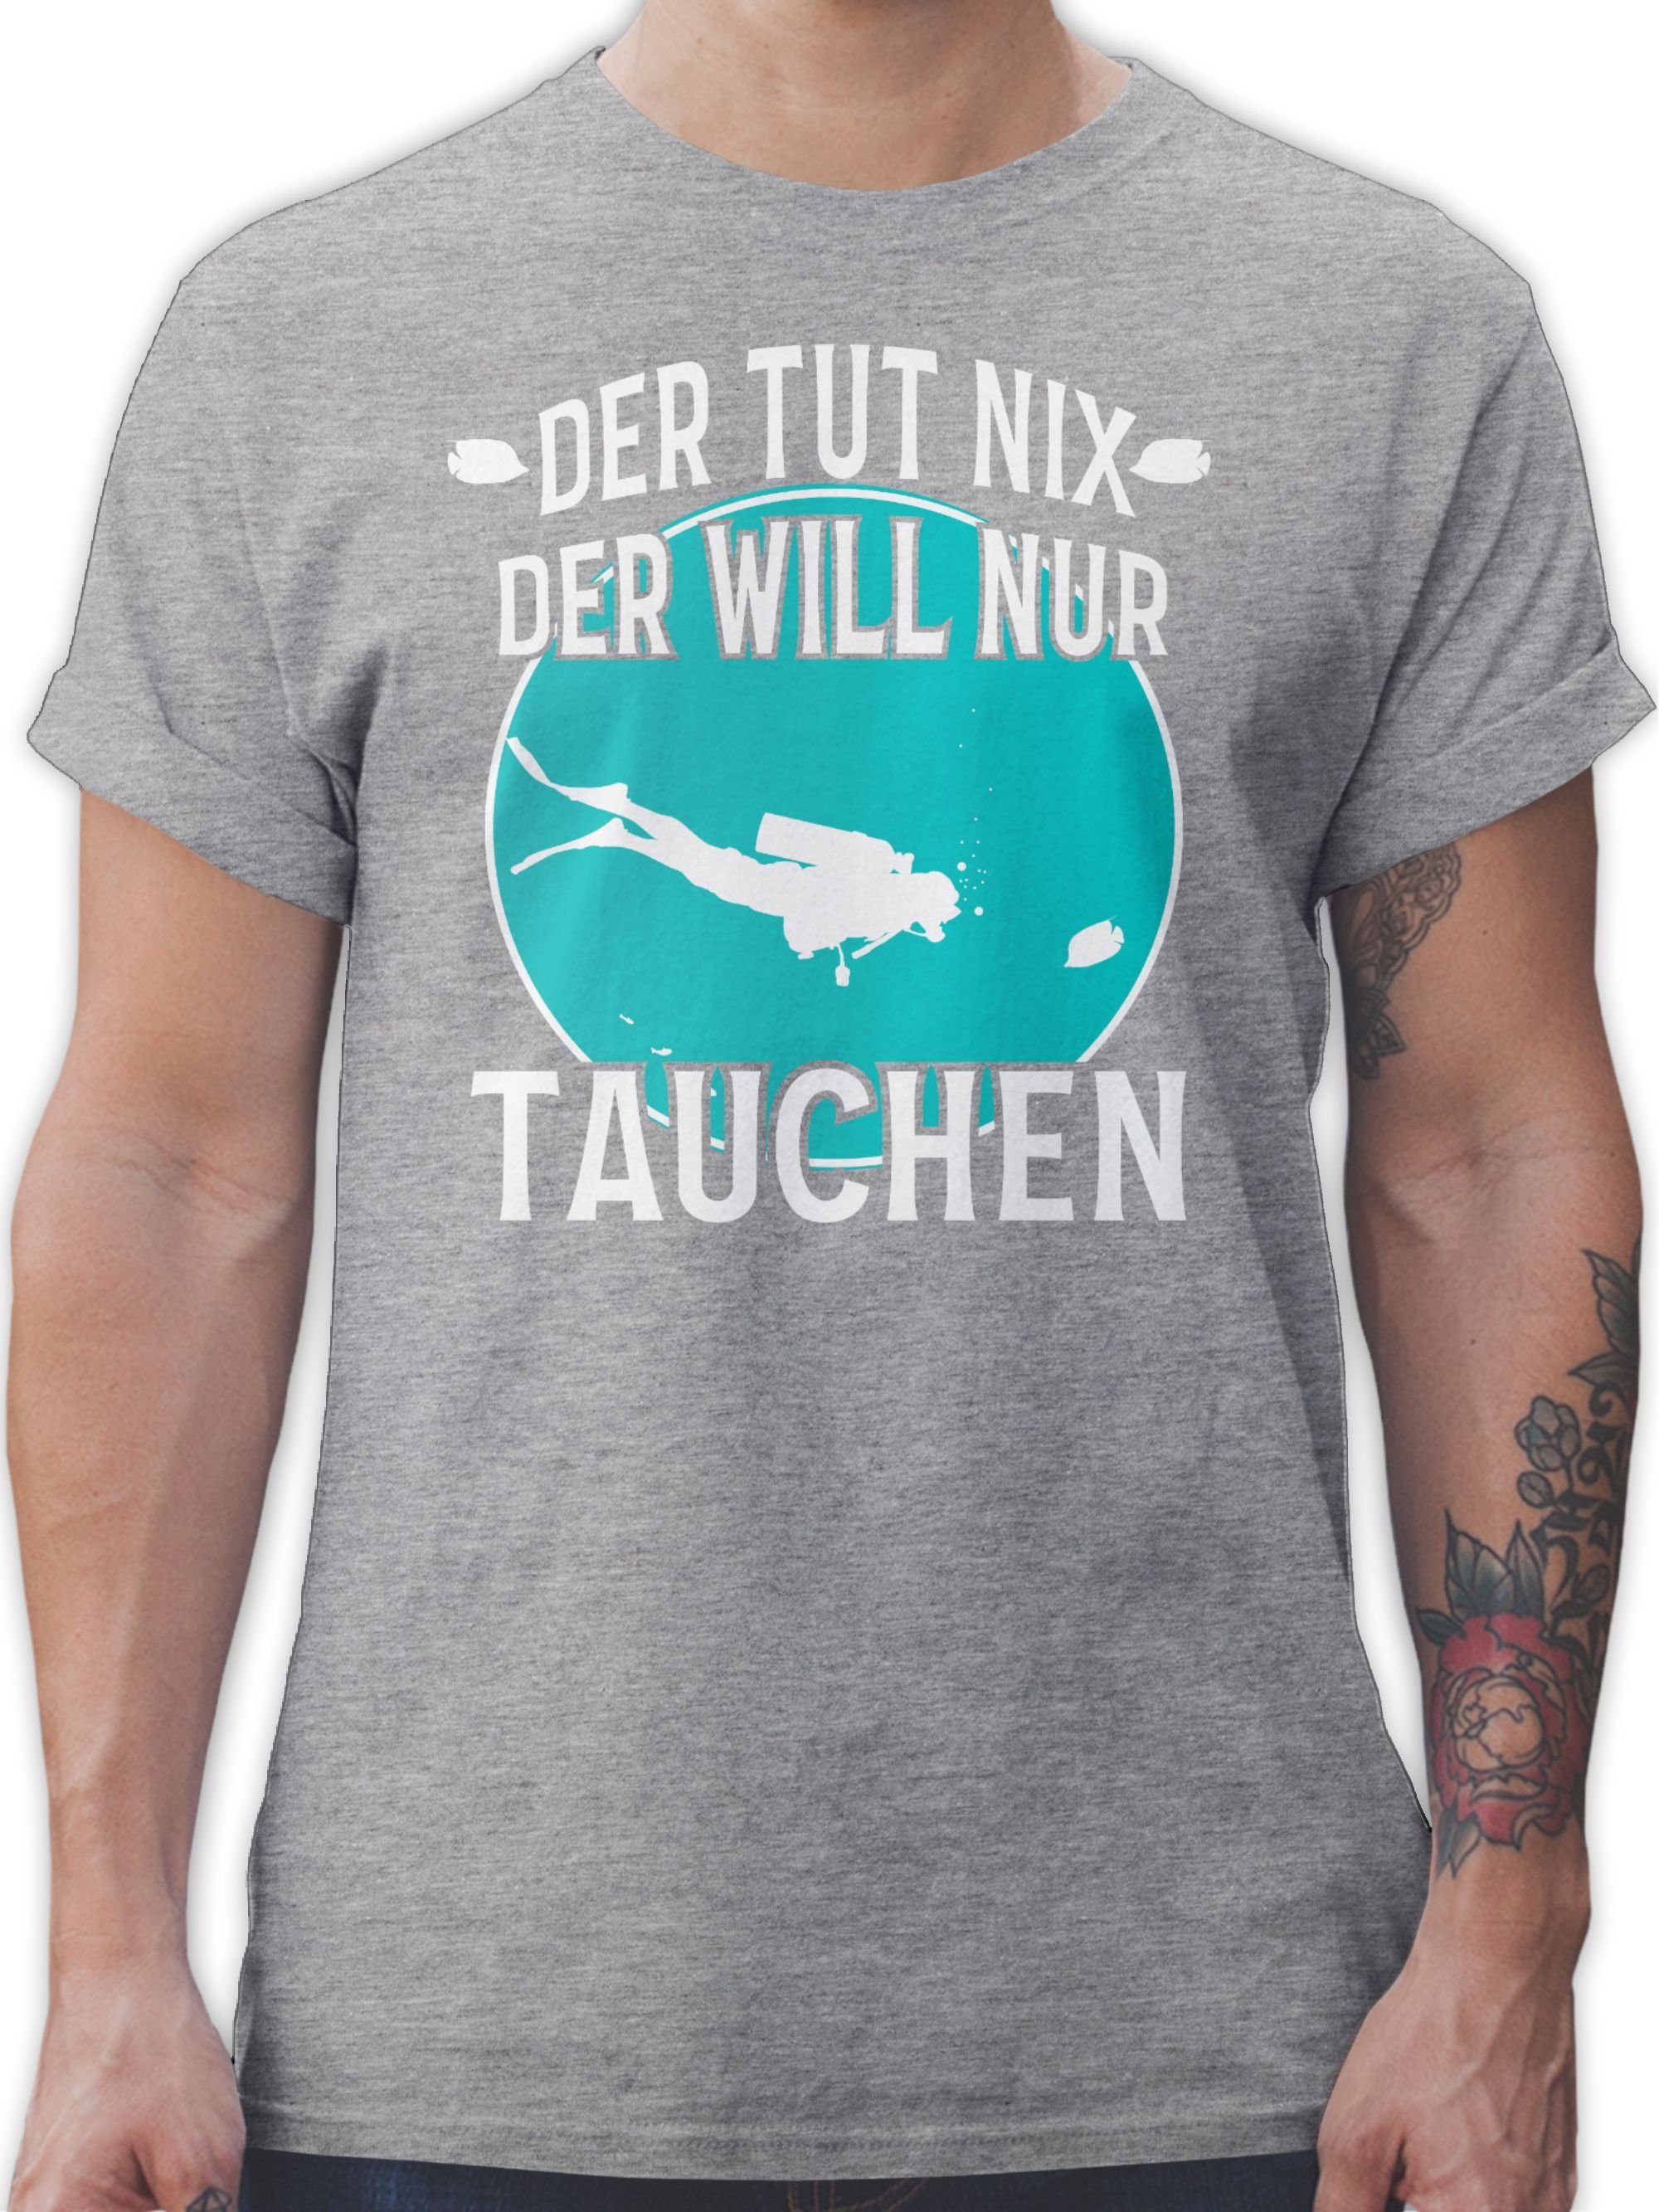 Herren Shirts Shirtracer T-Shirt Der tut nix der will nur tauchen - Wassersport - Herren Premium T-Shirt